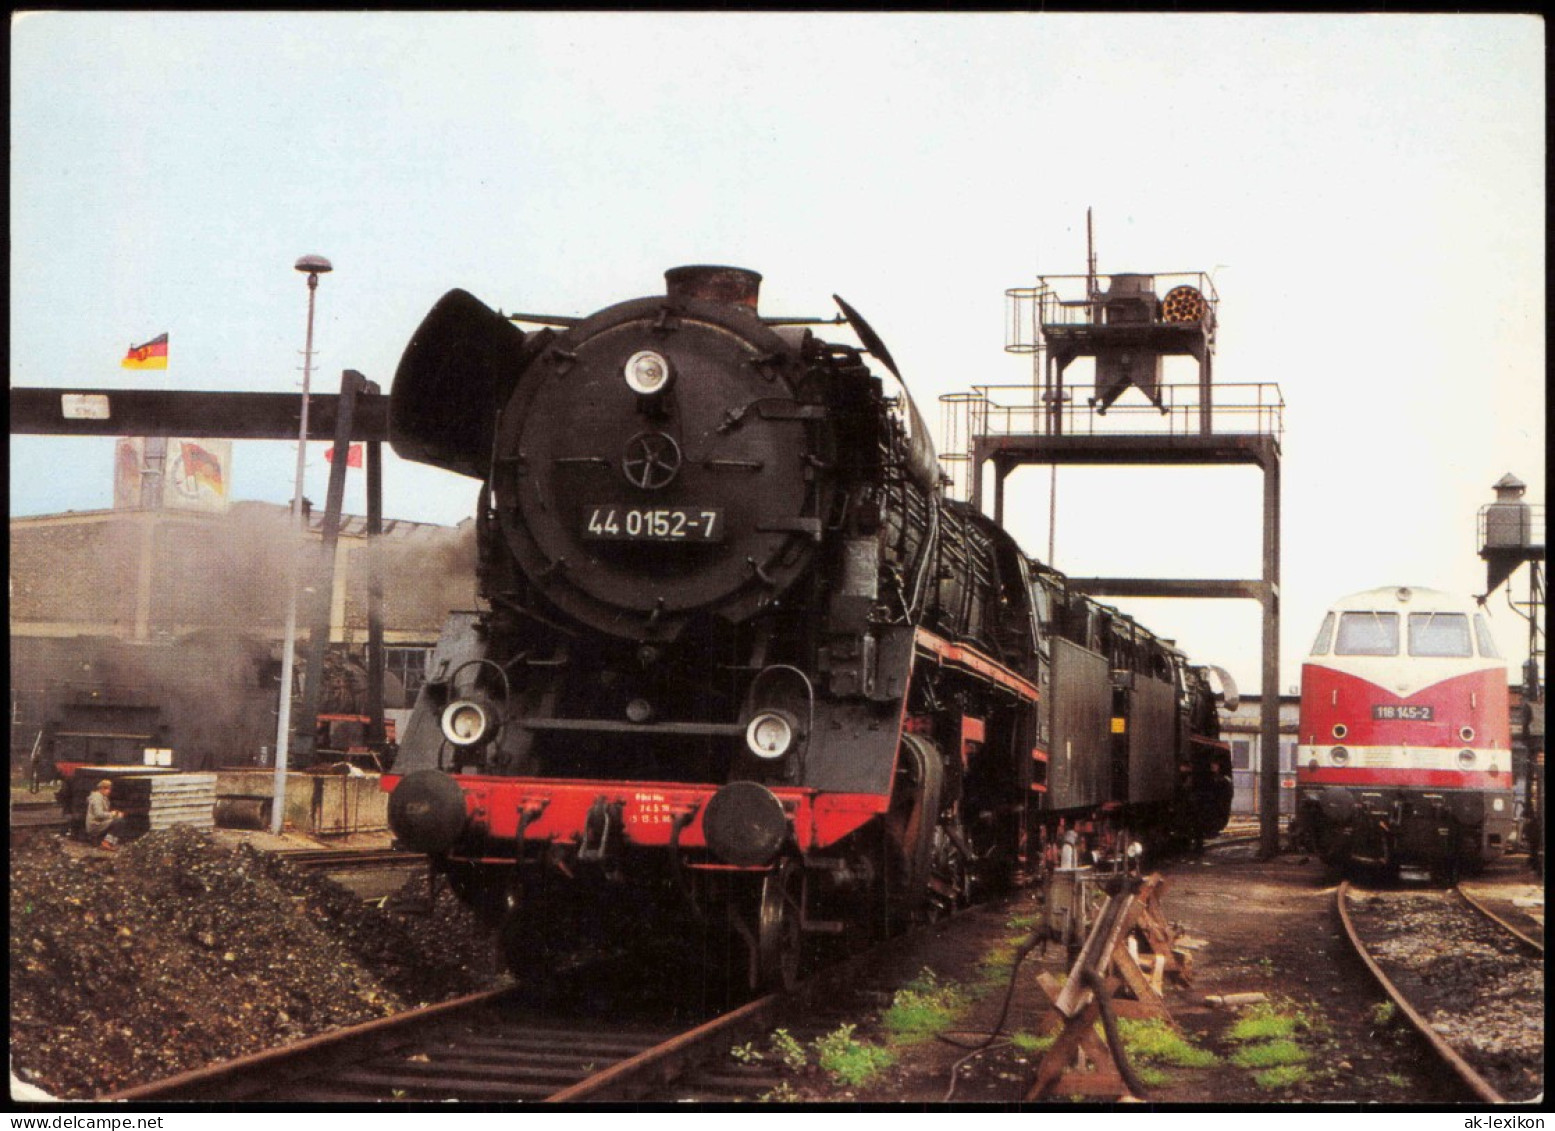 Ansichtskarte Rostock Lok BR 44.0 Im Bahnbetriebswerk 1985 - Rostock